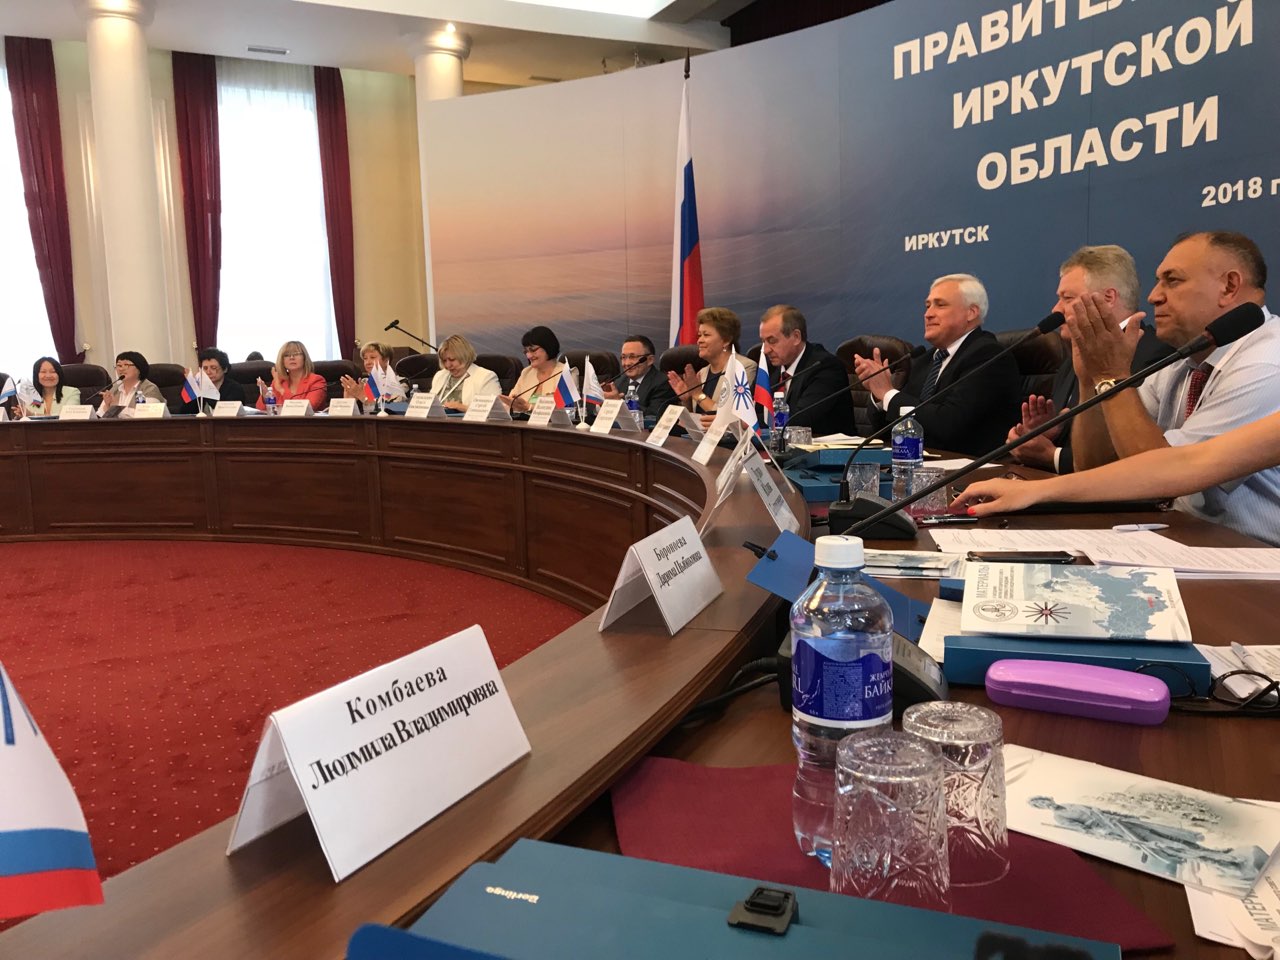 22-23 августа 2018 г. в г. Иркутске состоялось заседание Научно-методического совета Сибирского федерального округа